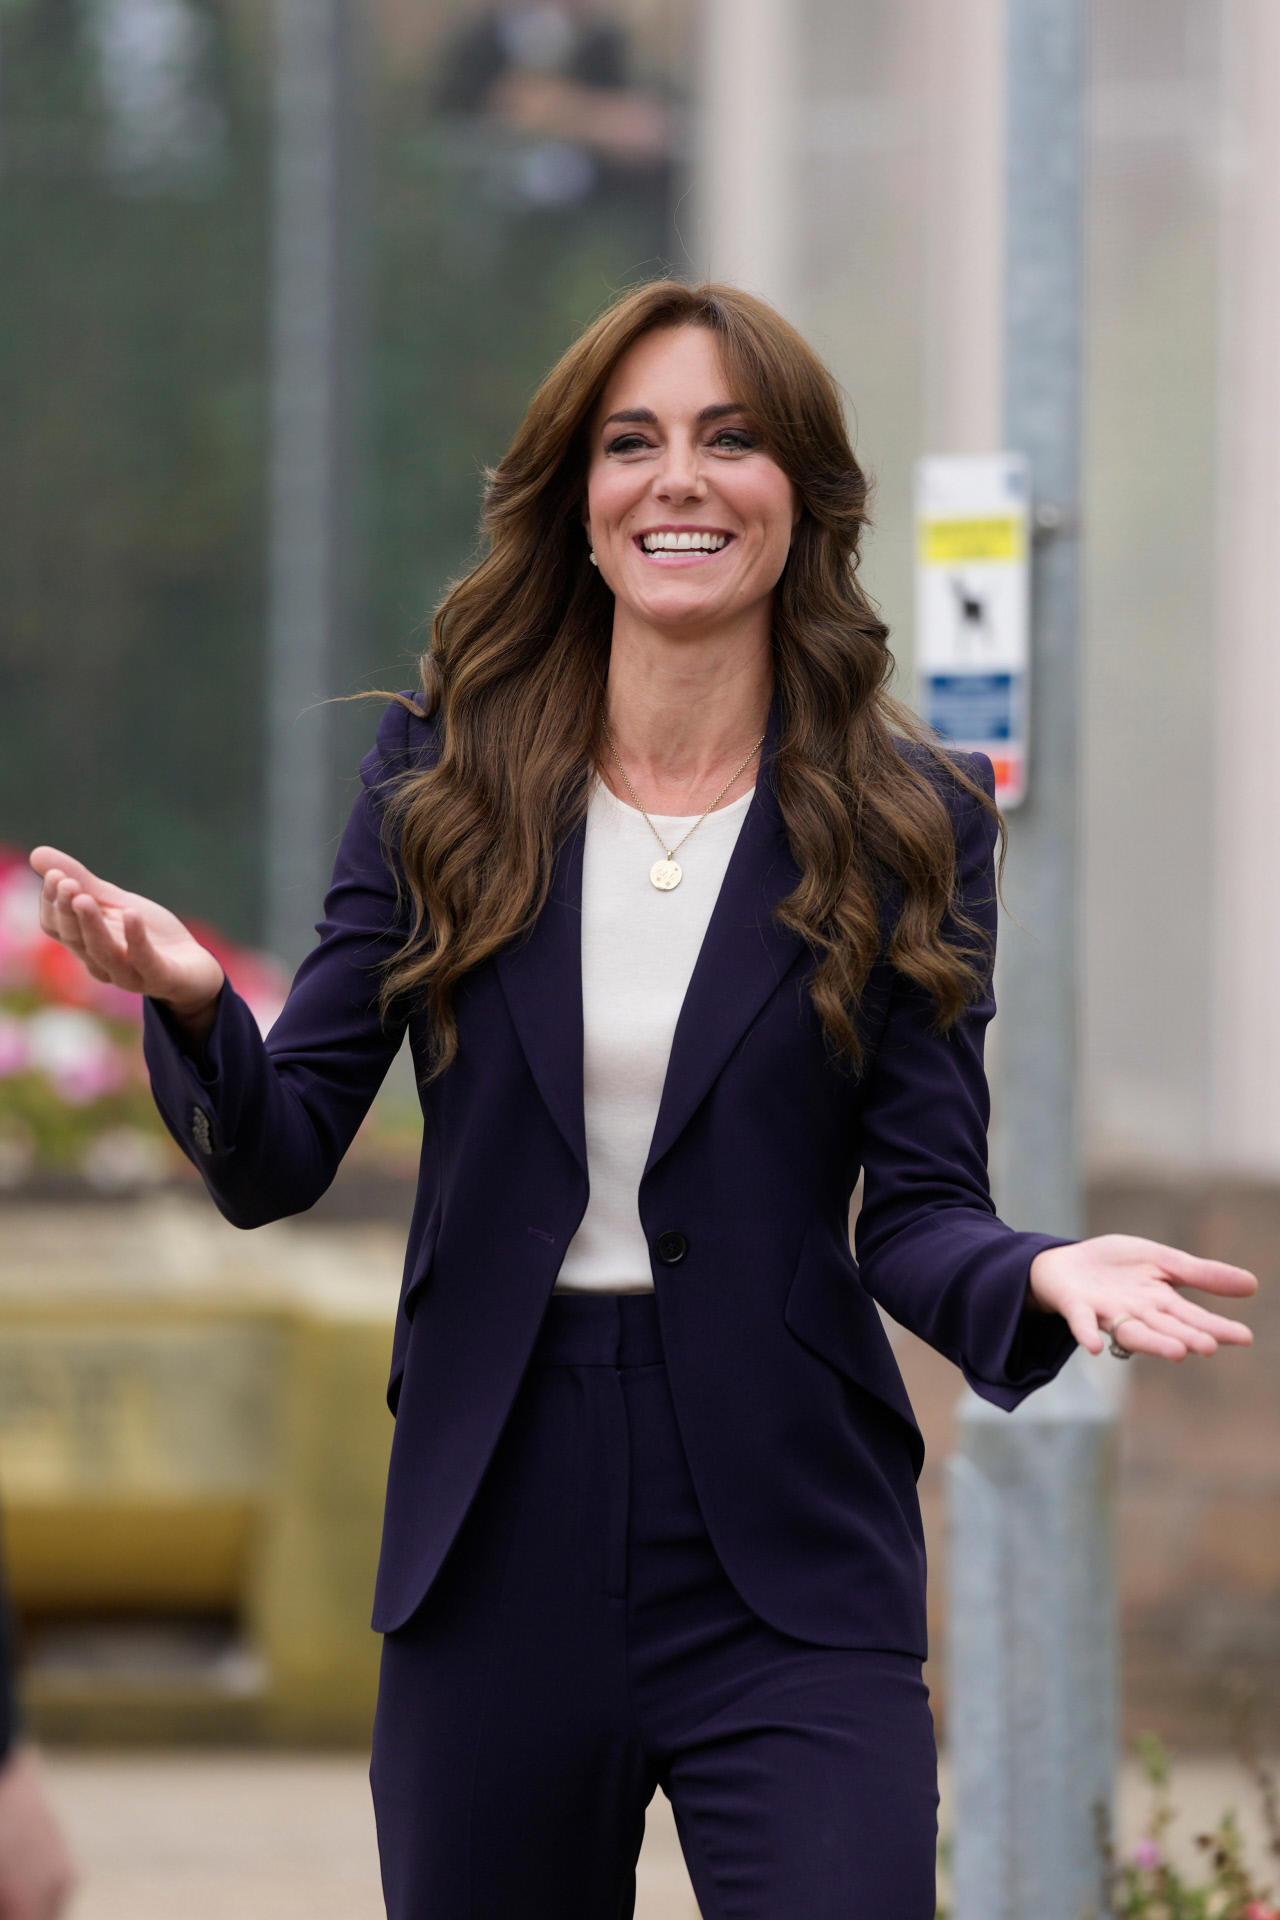 Cómo llevar un traje según Kate Middleton